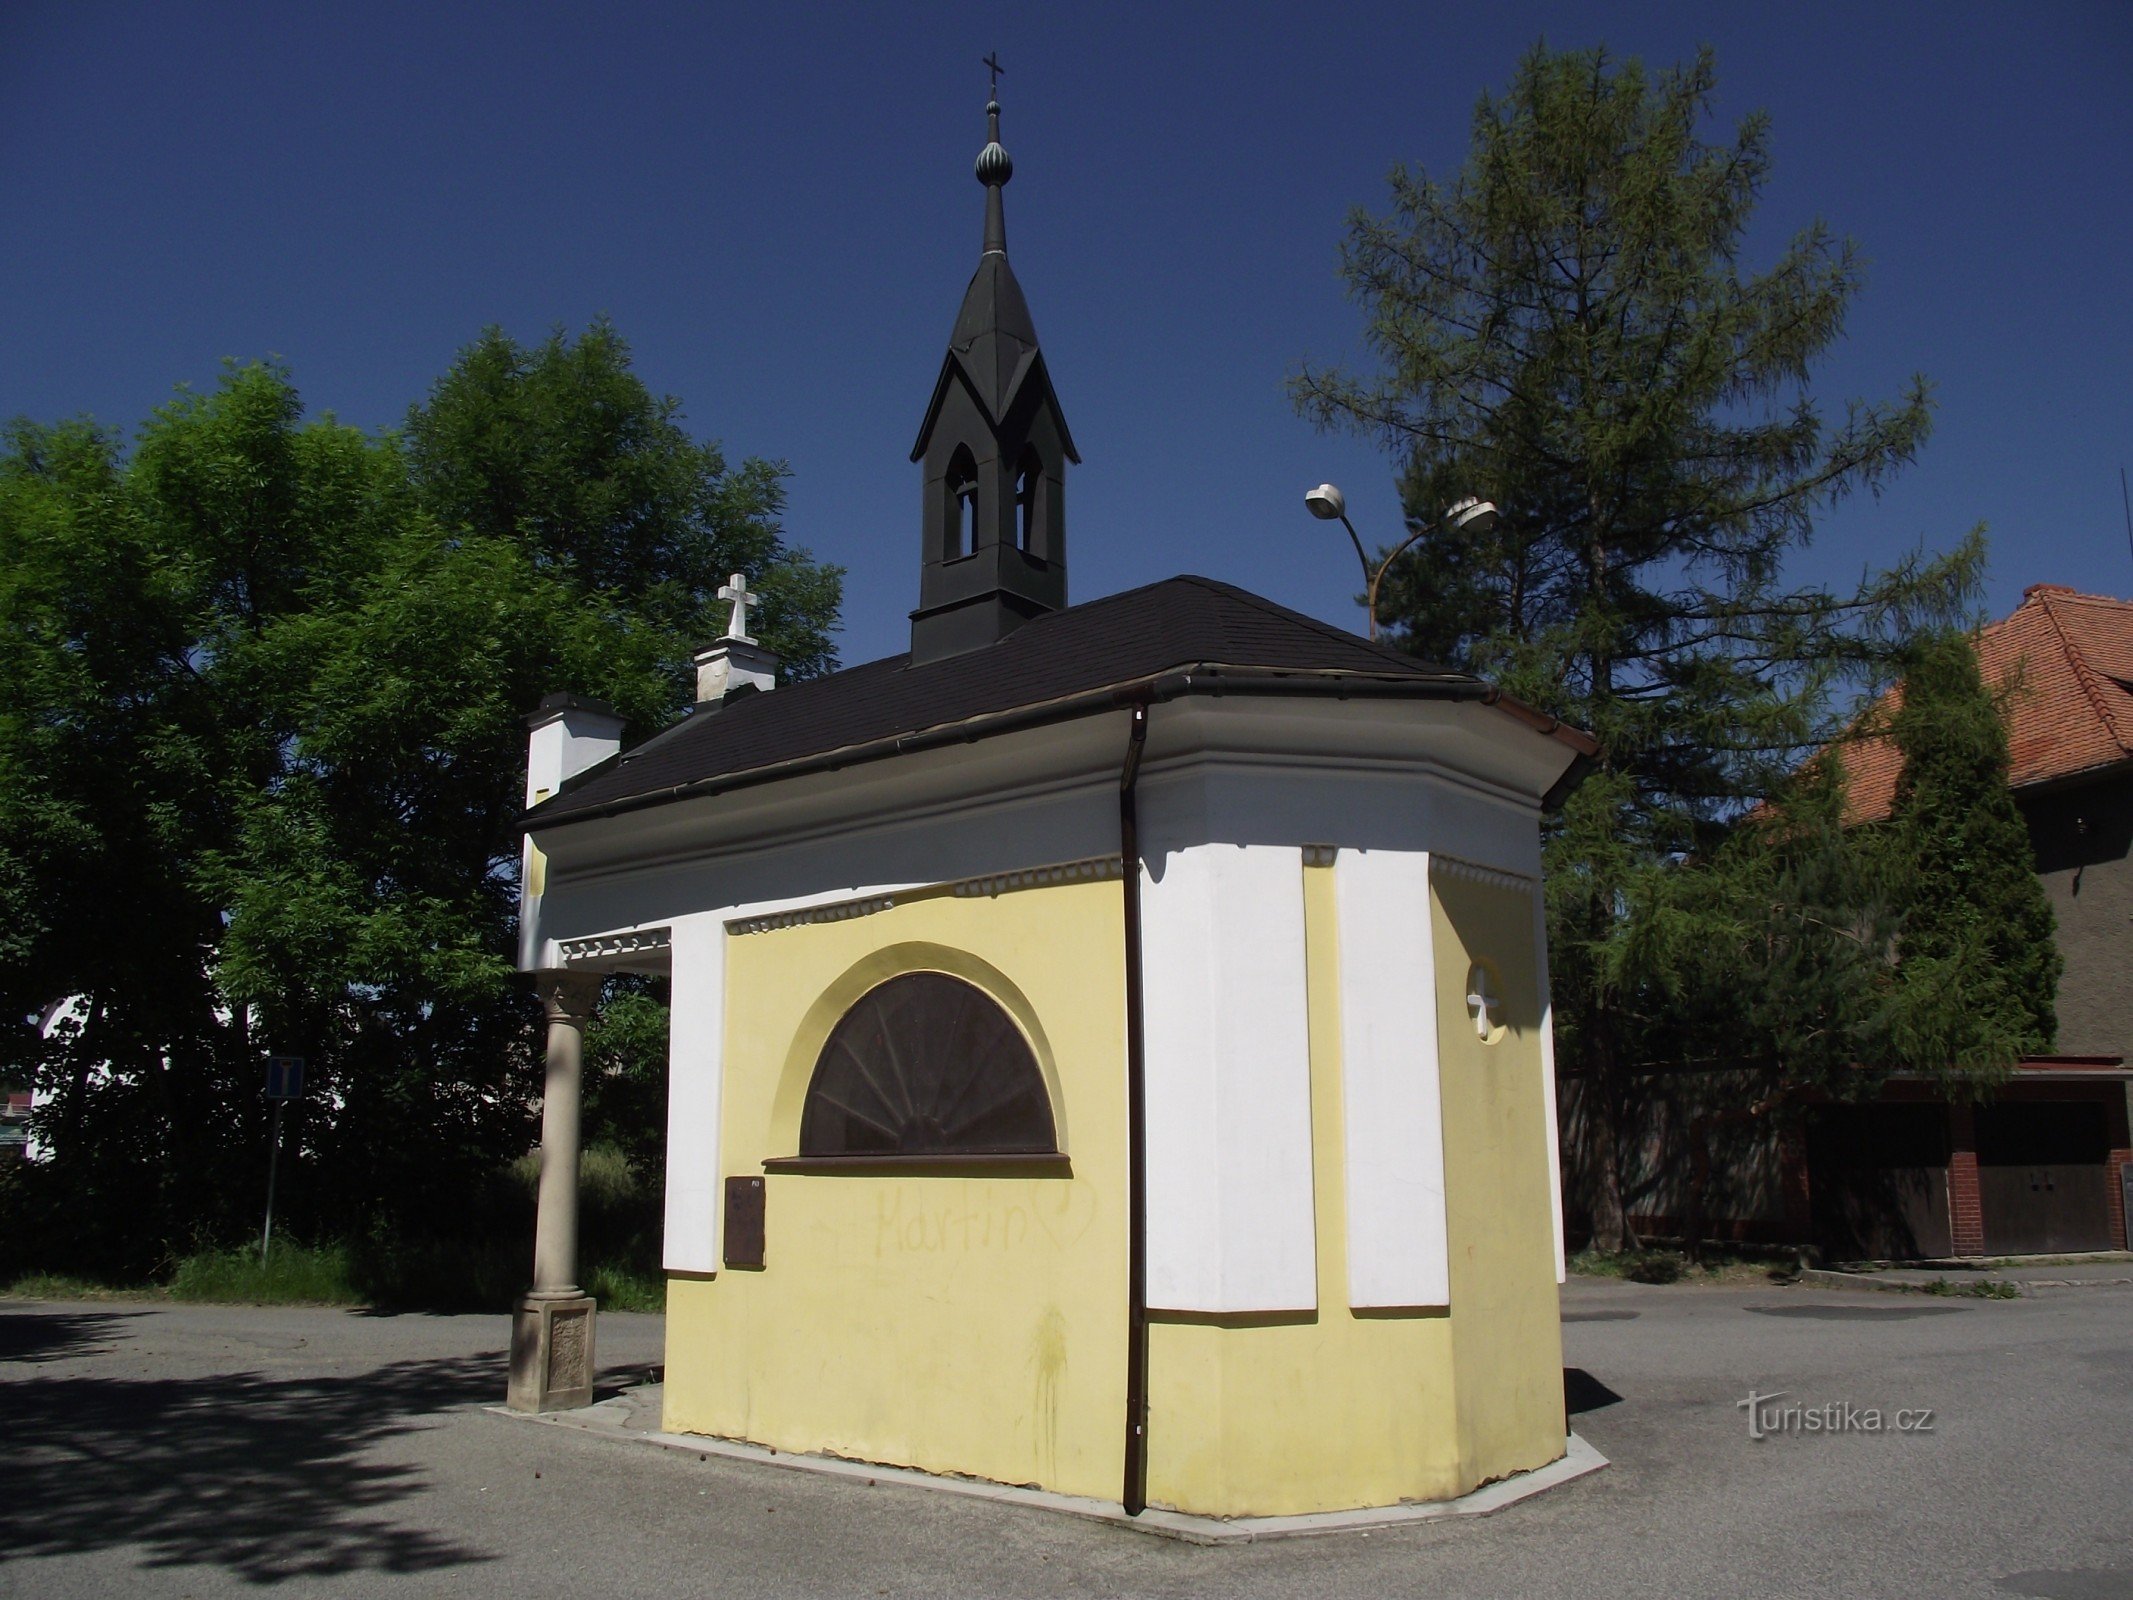 Valašské Meziříčí (Krásno) – capilla de St. Rocha